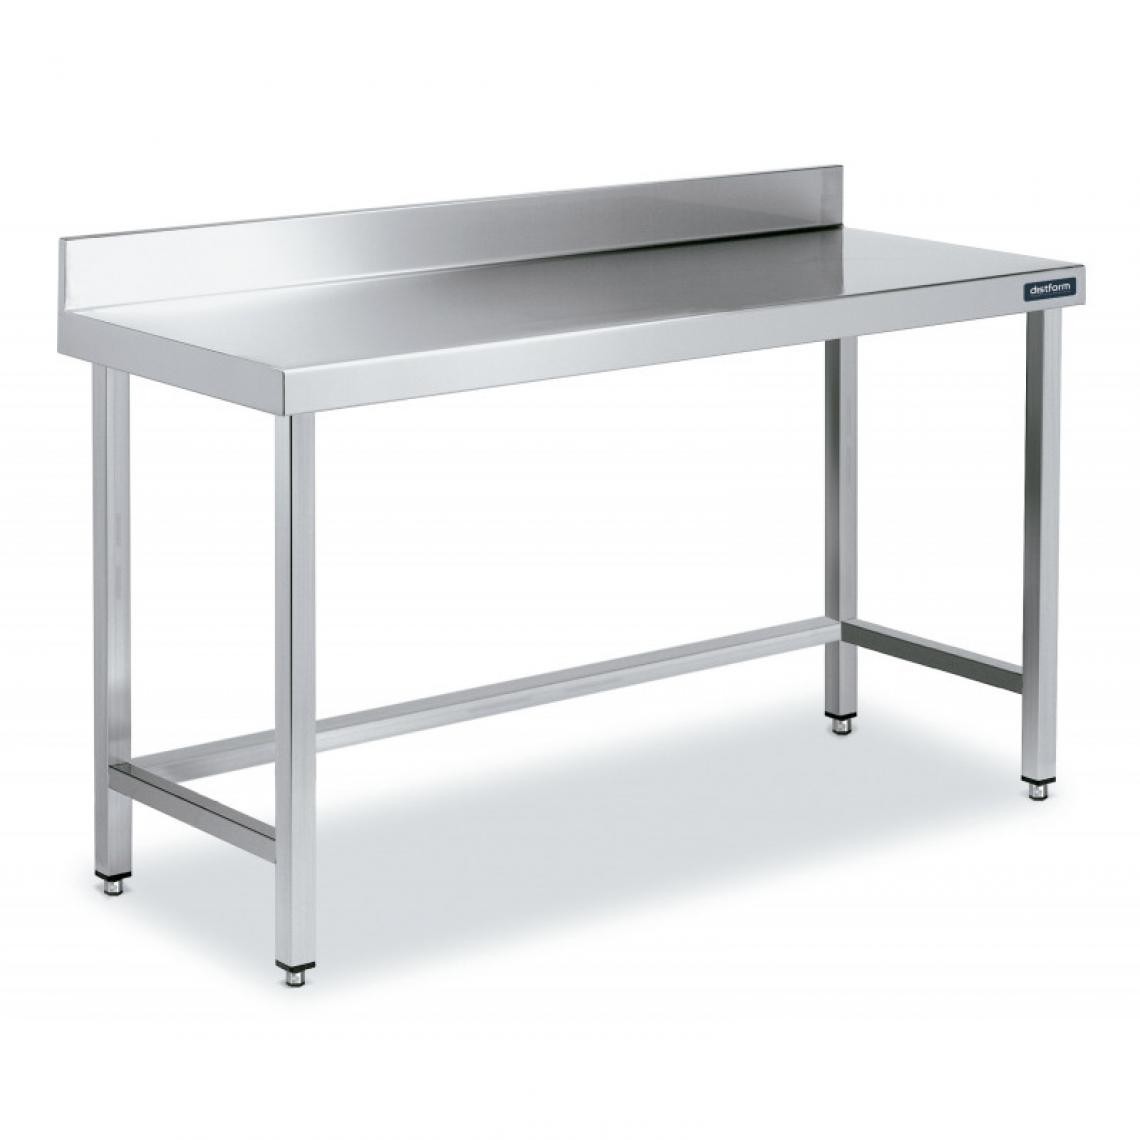 DISTFORM - Table Adossée en Inox avec Renforts Profondeur 700 mm - Distform - Acier inoxydable1200x700 - Tables à manger